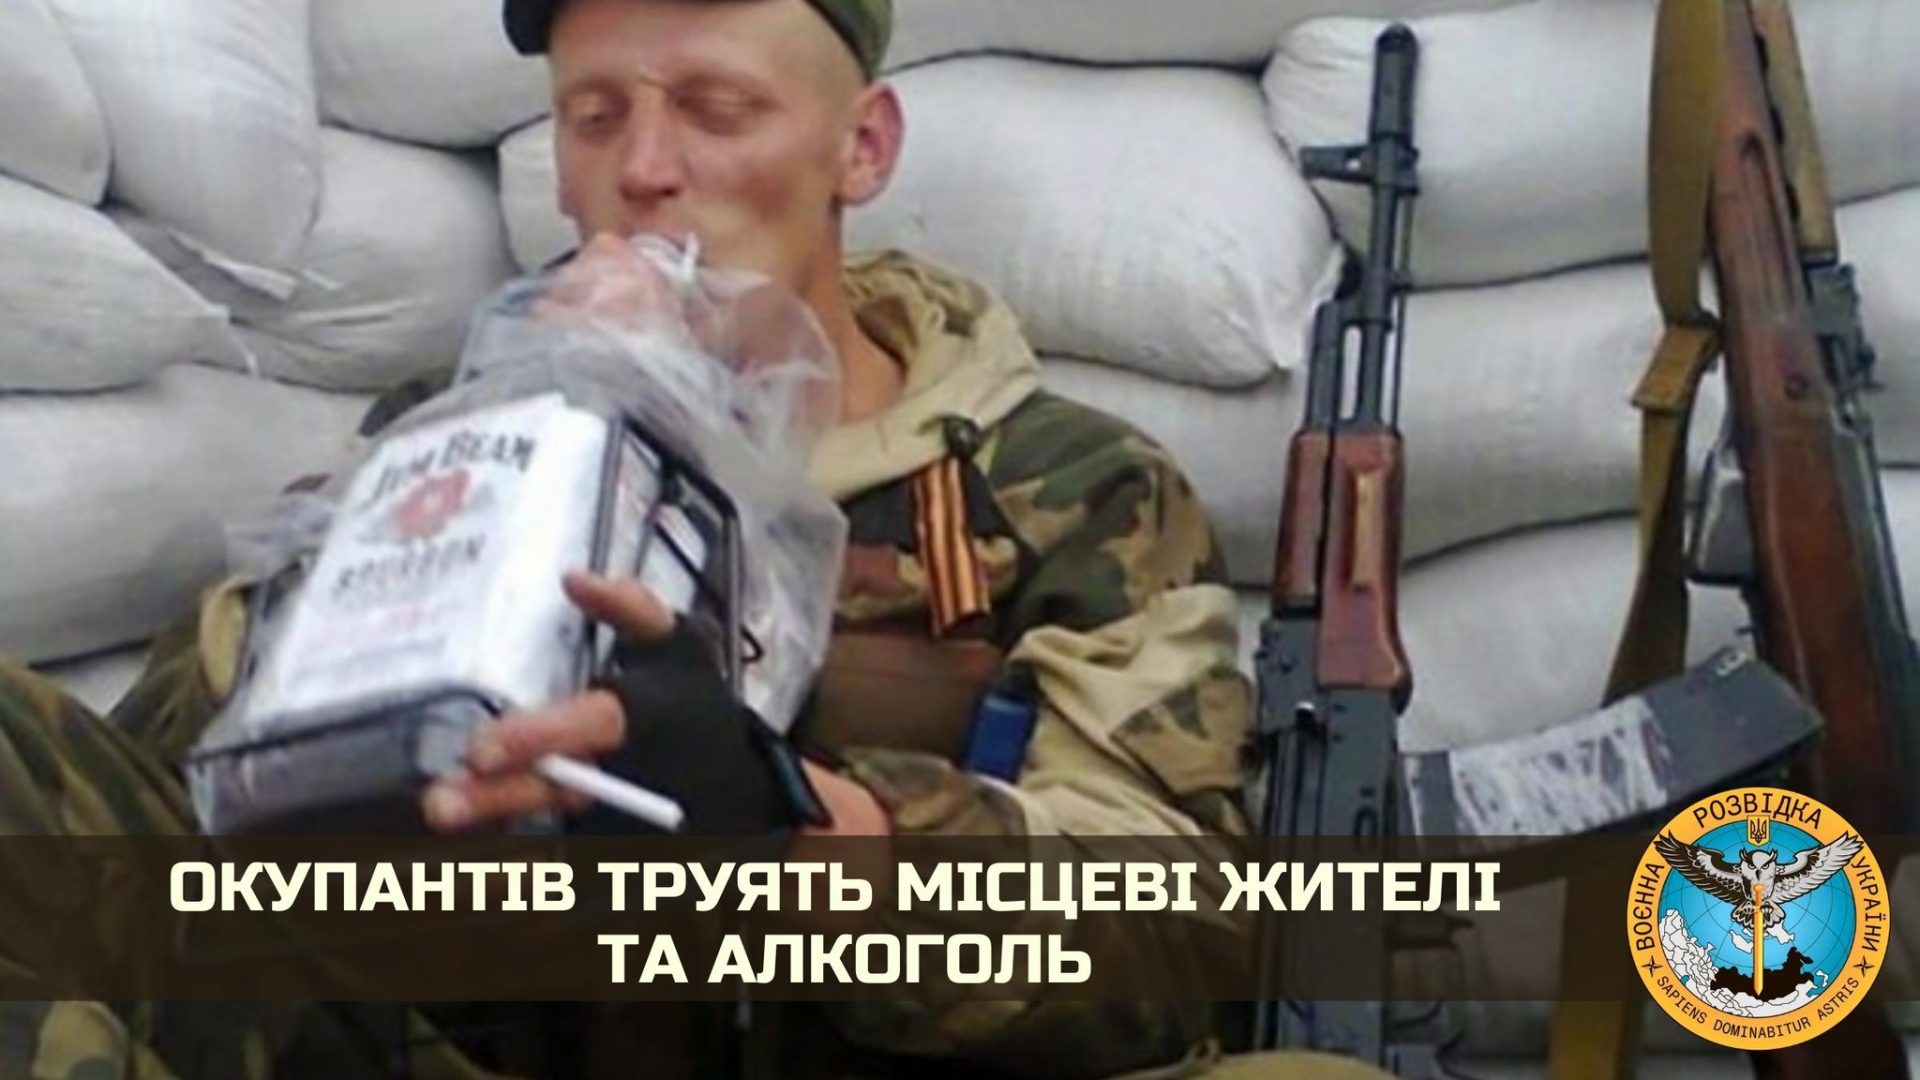 Militares russos morrem envenenados por civis ucranianos